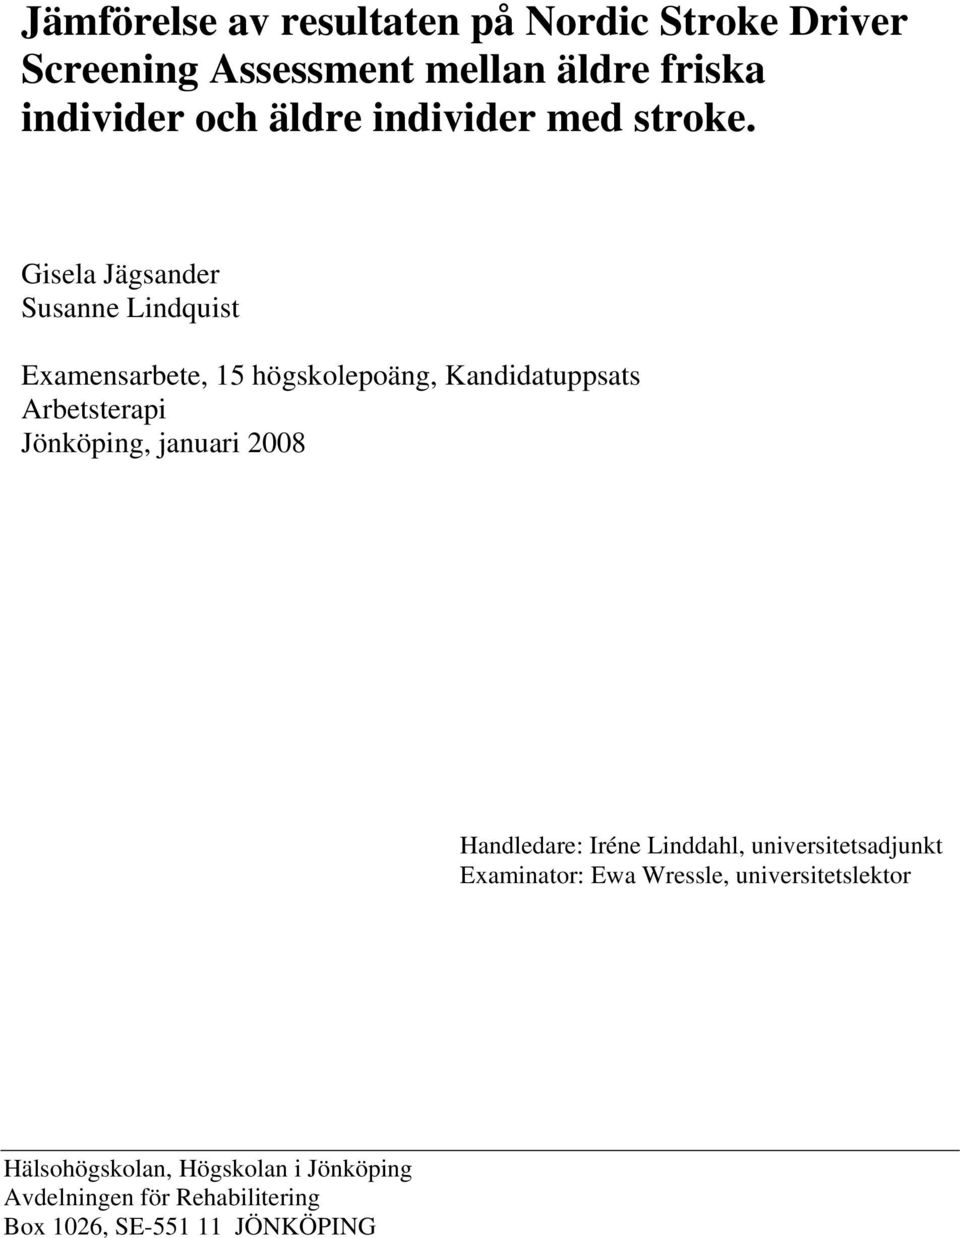 Gisela Jägsander Susanne Lindquist Examensarbete, 15 högskolepoäng, Kandidatuppsats Arbetsterapi Jönköping,